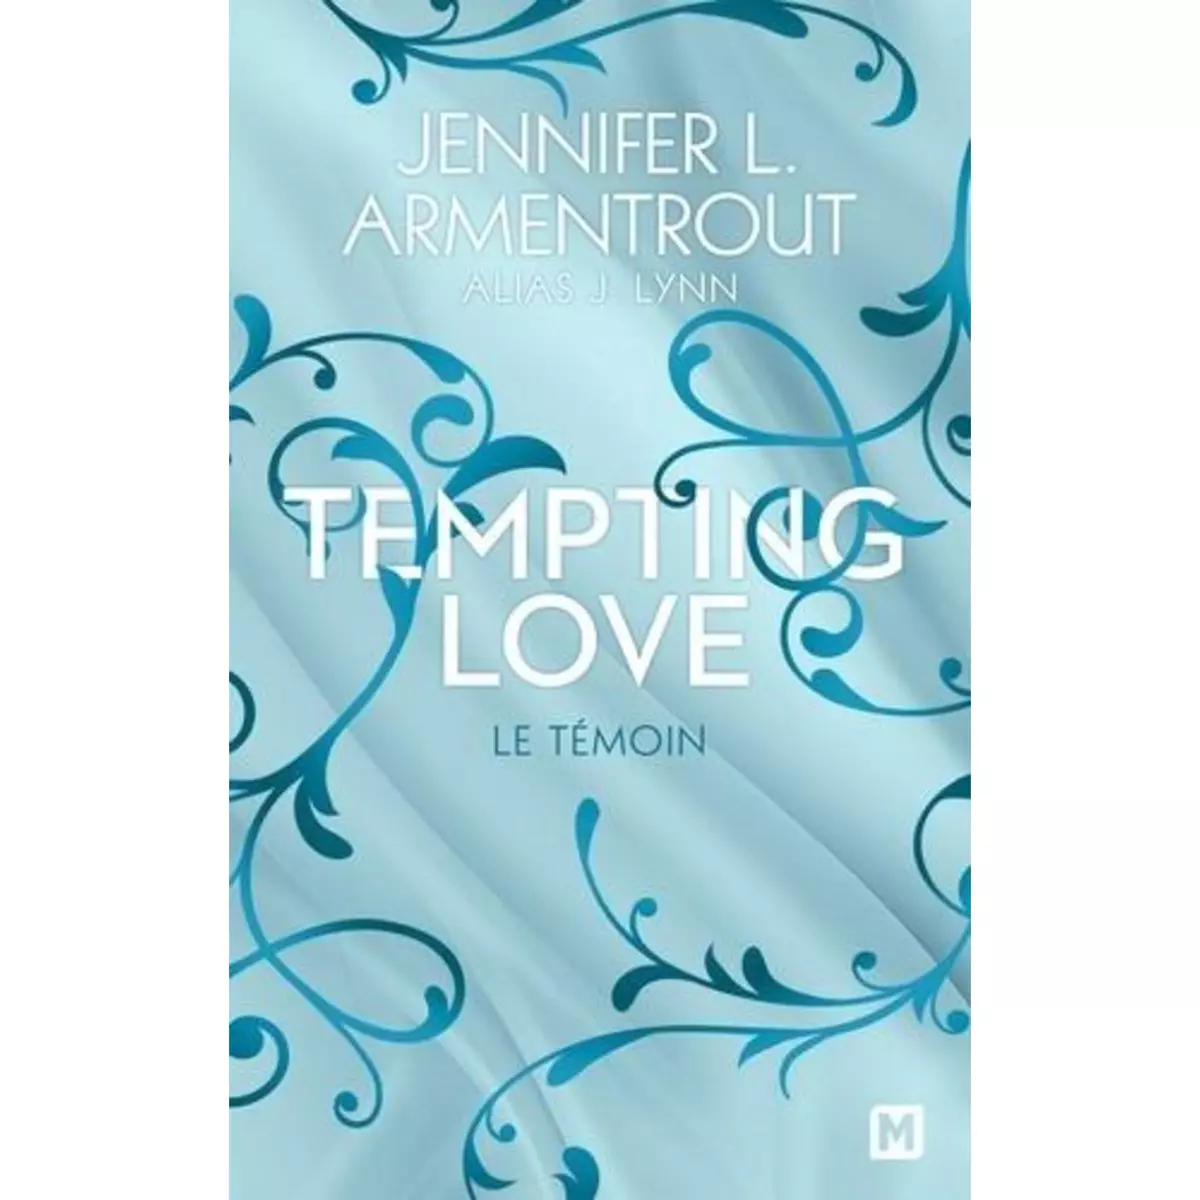  TEMPTING LOVE TOME 1 : LE TEMOIN, Armentrout Jennifer L.